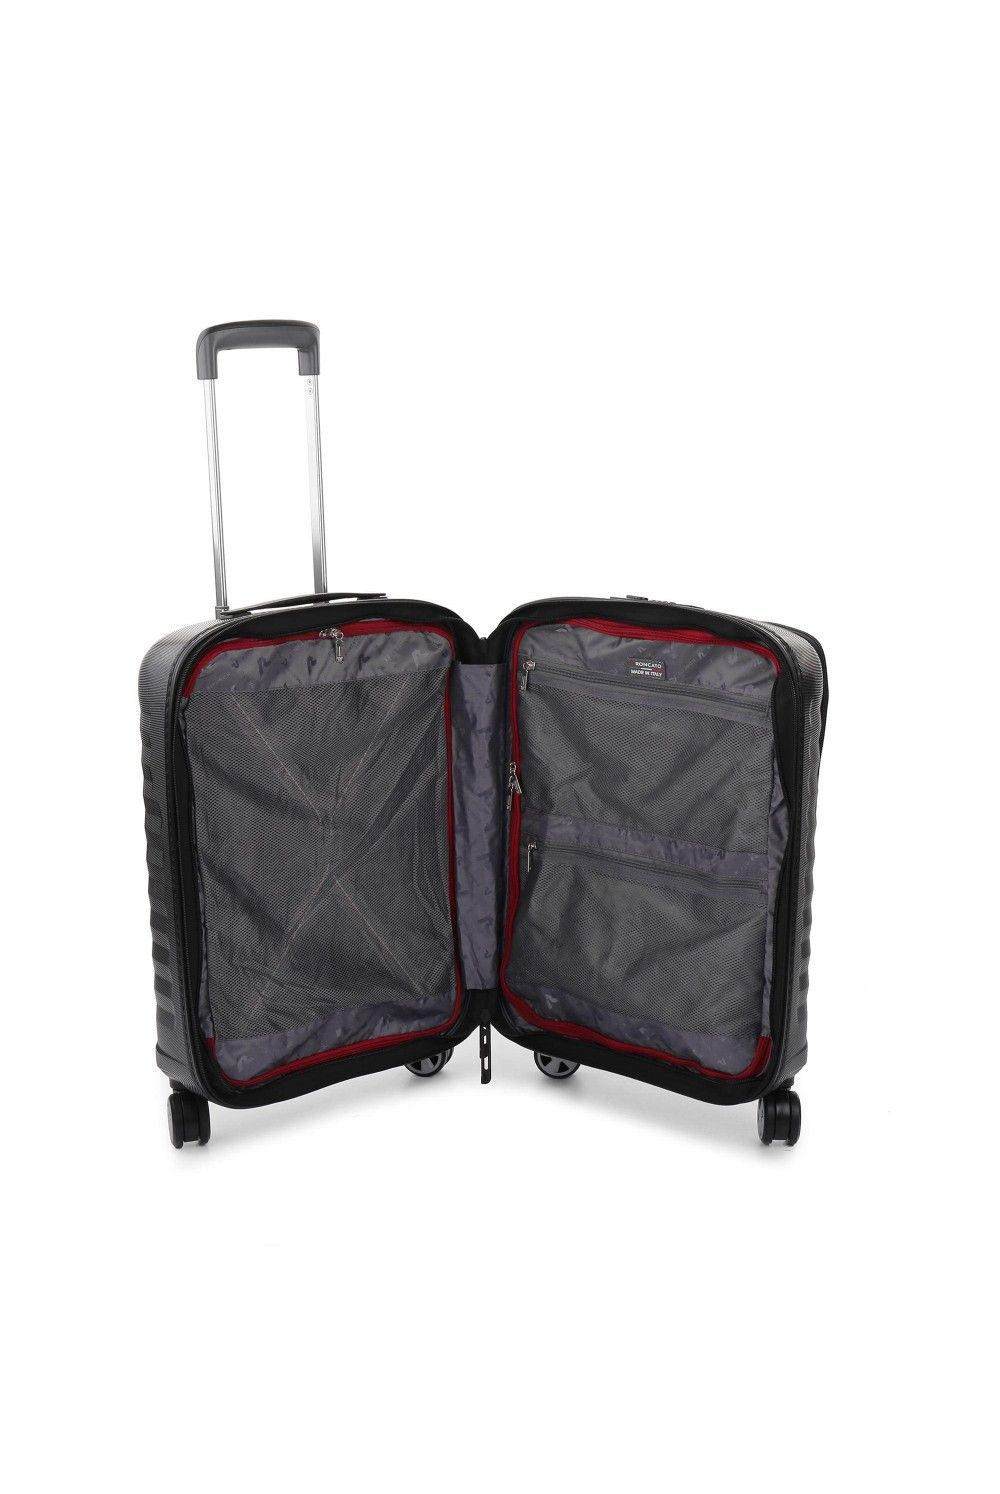 Roncato bagages à main D-Premium 55x40x20/23 extensible marron